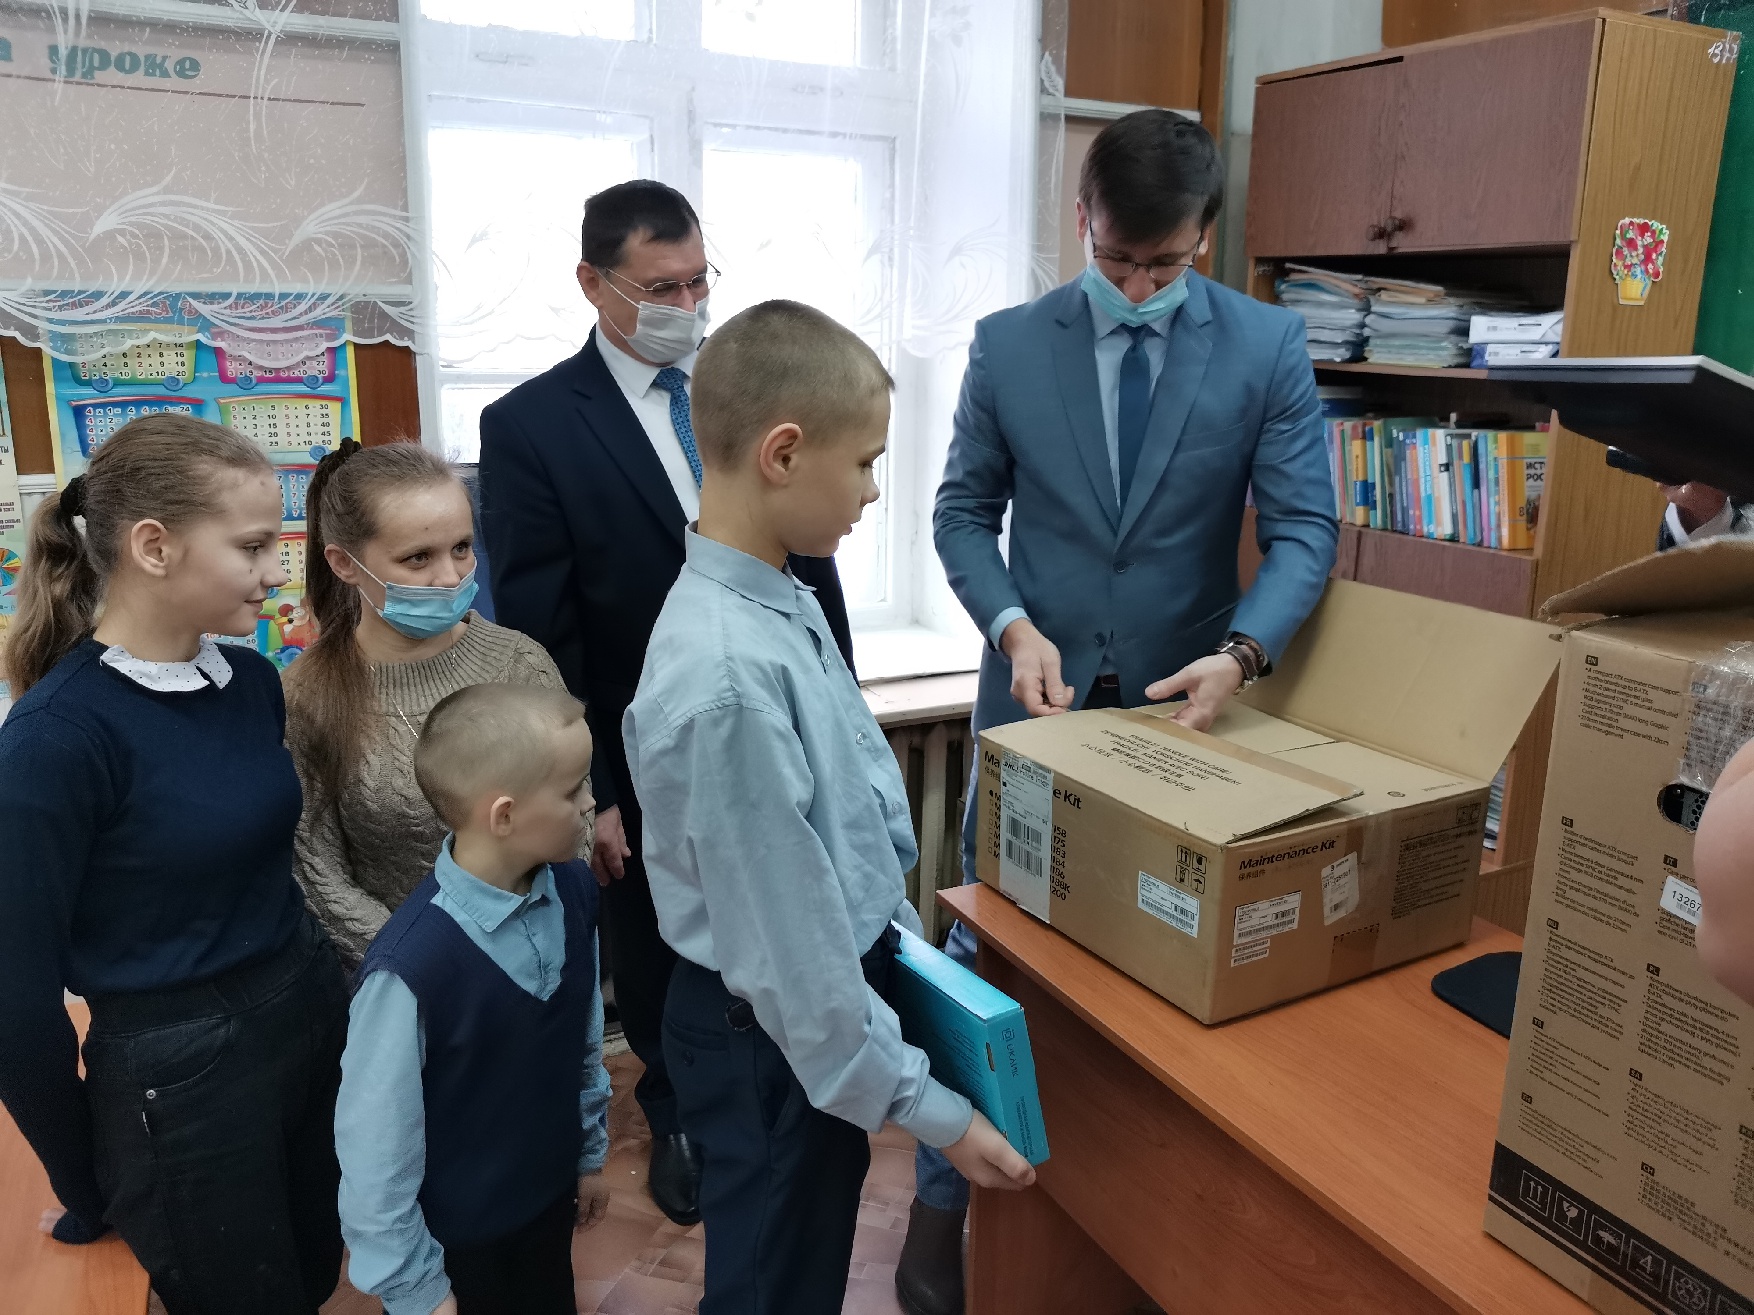 ООО «Речсервис» и АО «Осетровский речной порт» оказали помощь детям и многодетным семьям